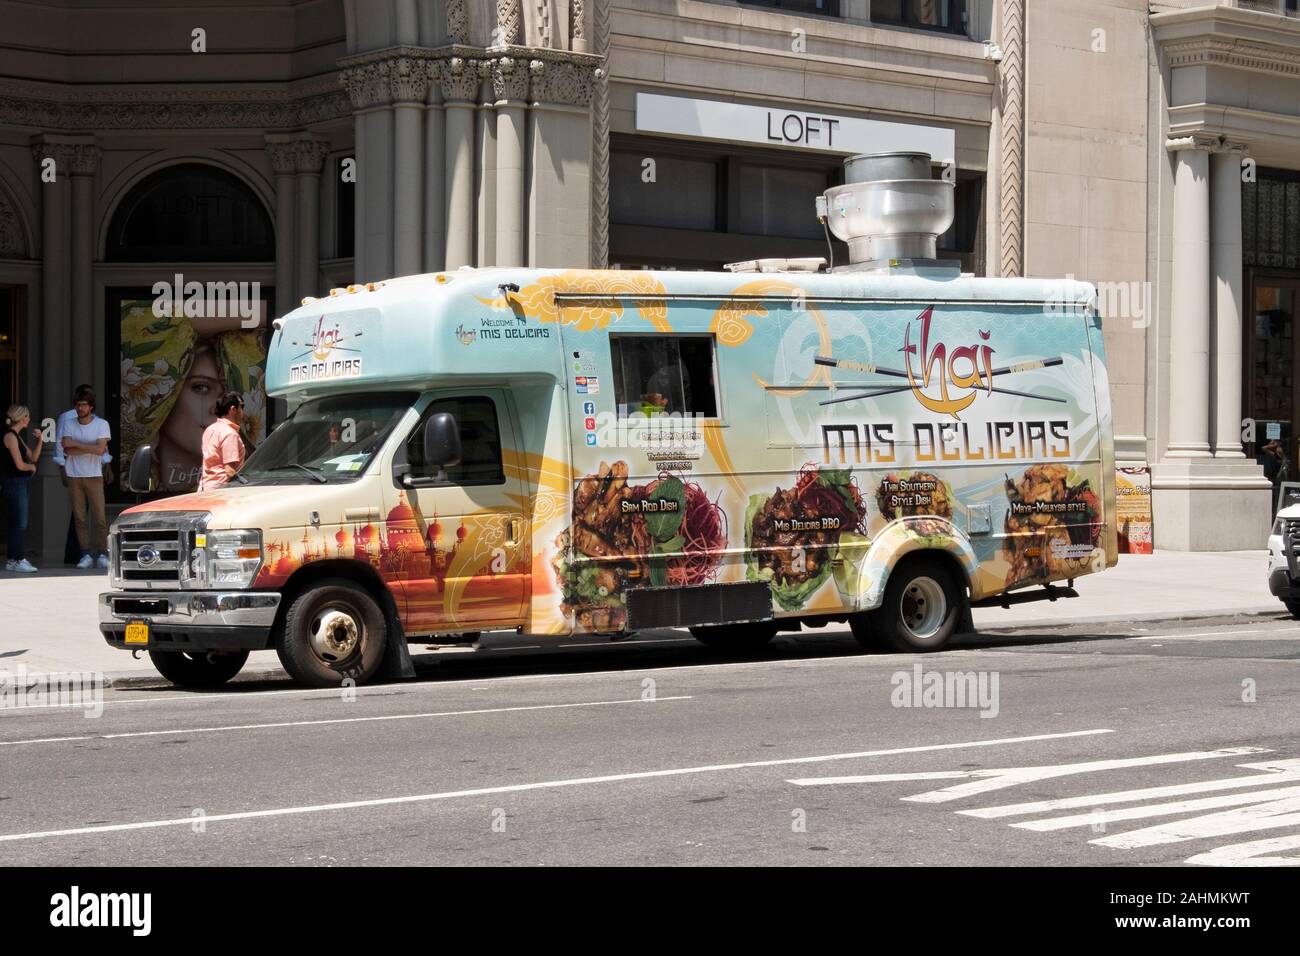 Le THAI MIS DÉLICAS fast food truck sur la Cinquième Avenue dans le quartier Flatiron, Lower Manhattan, New York City. Banque D'Images